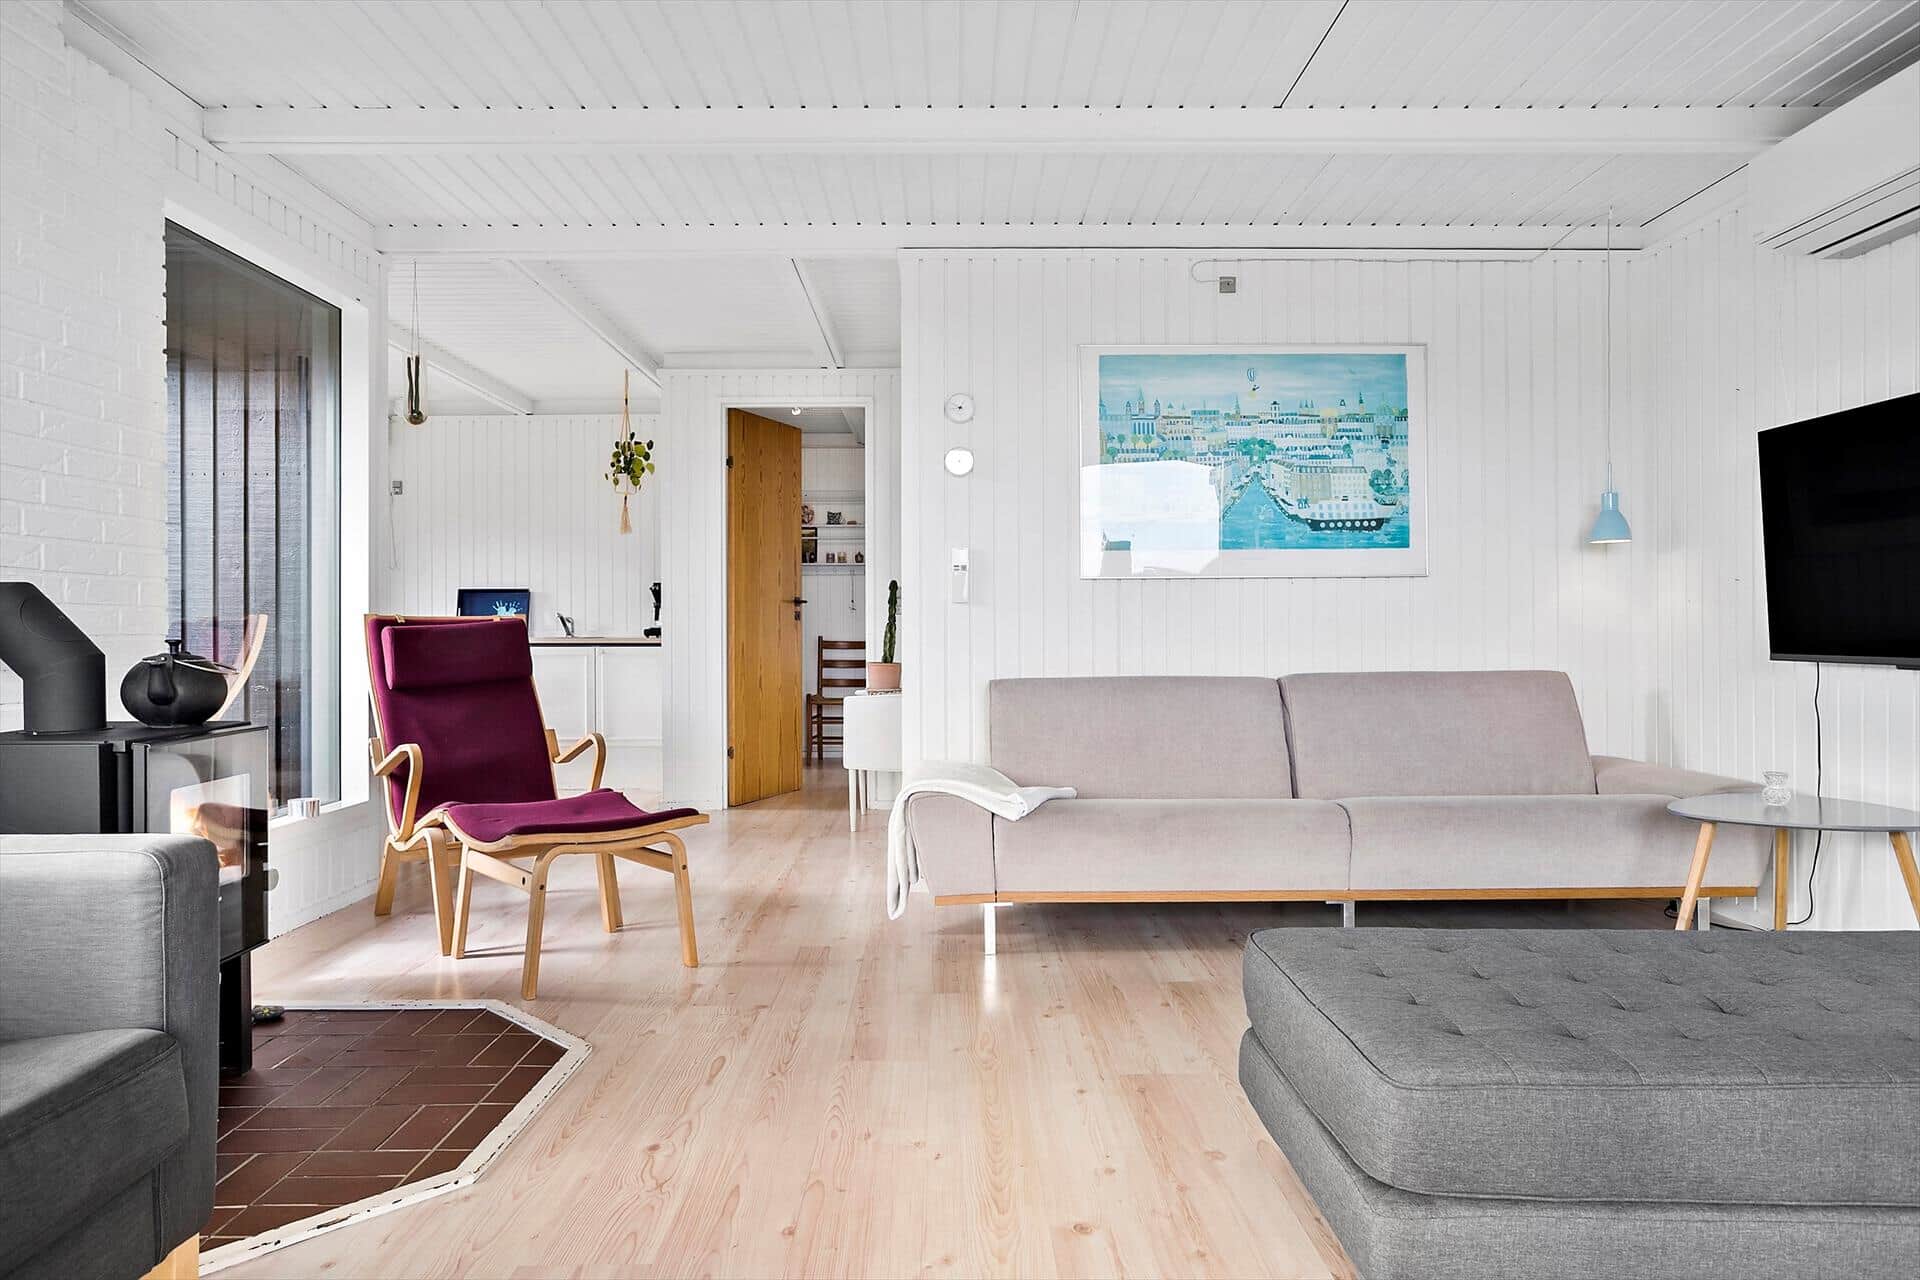 Livingroom 1 Image 3-19 Holiday-home 40321, Ålykke 12, DK - 7130 Juelsminde